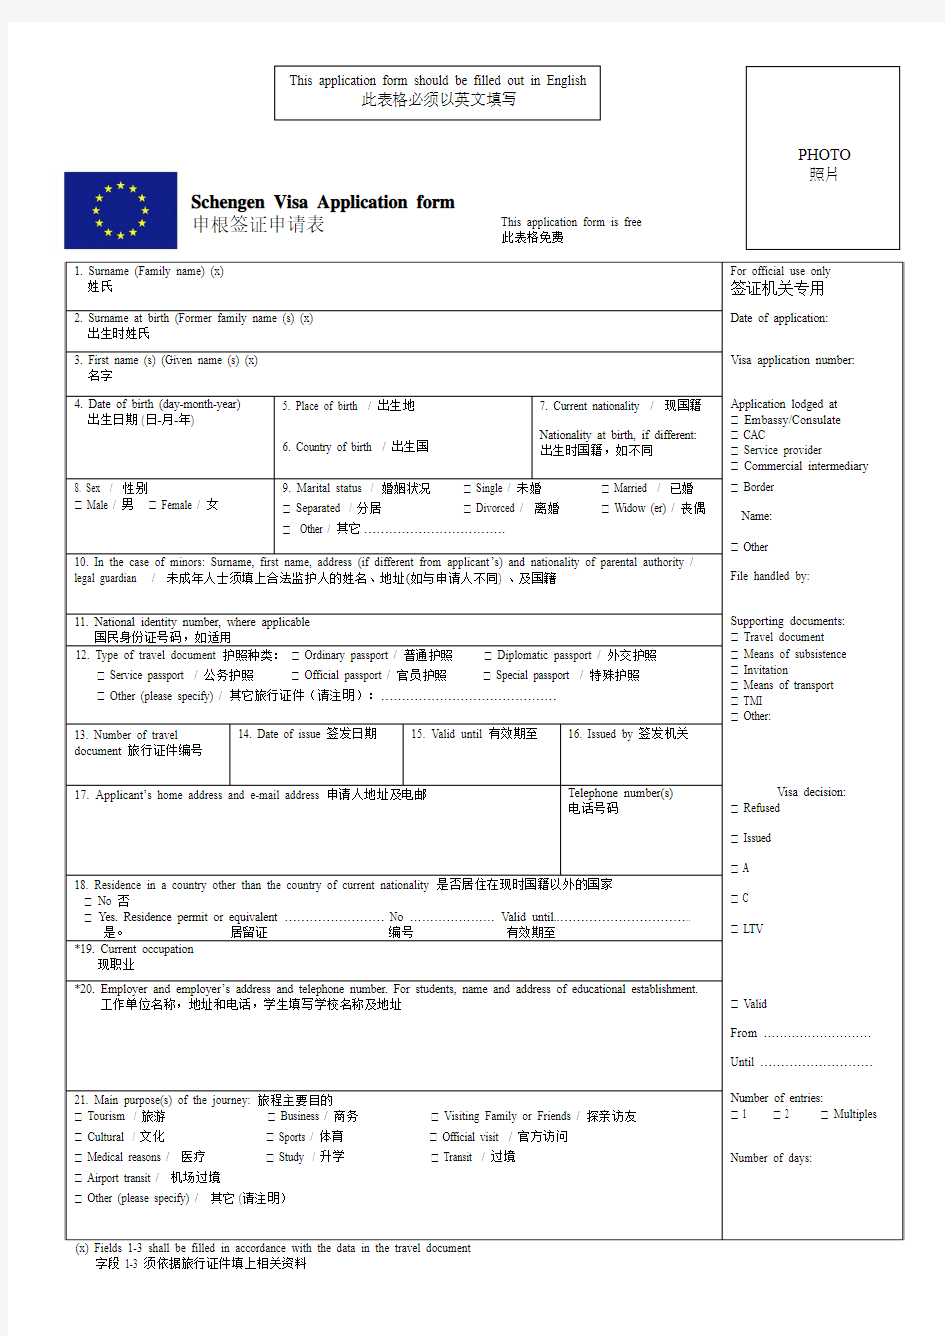 法国签证申请表-中英文版-官方